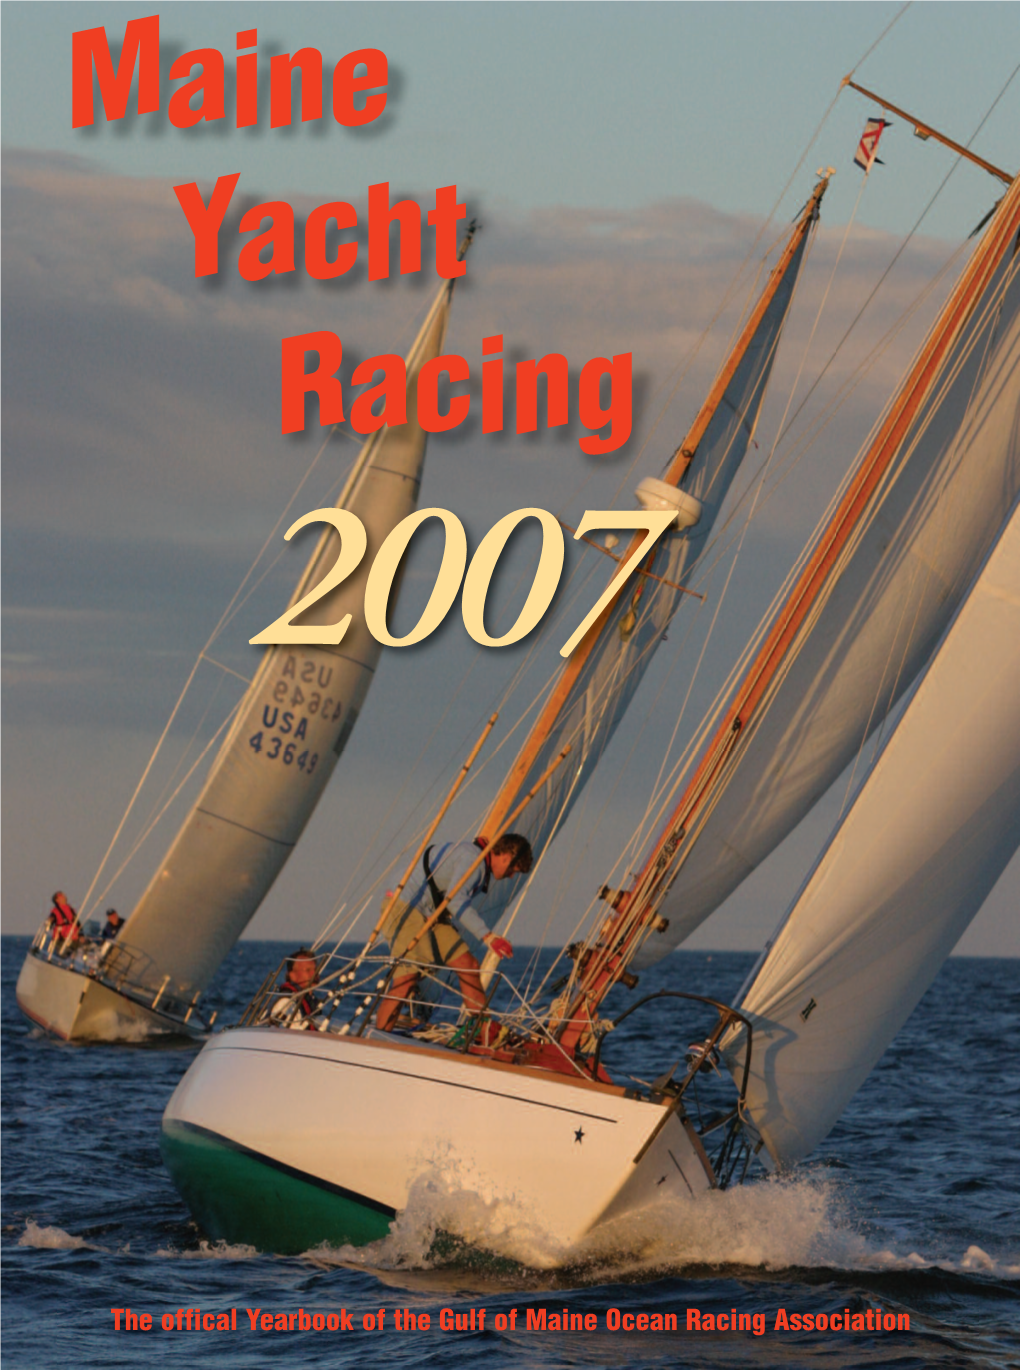 Maine Yacht Racing 2007